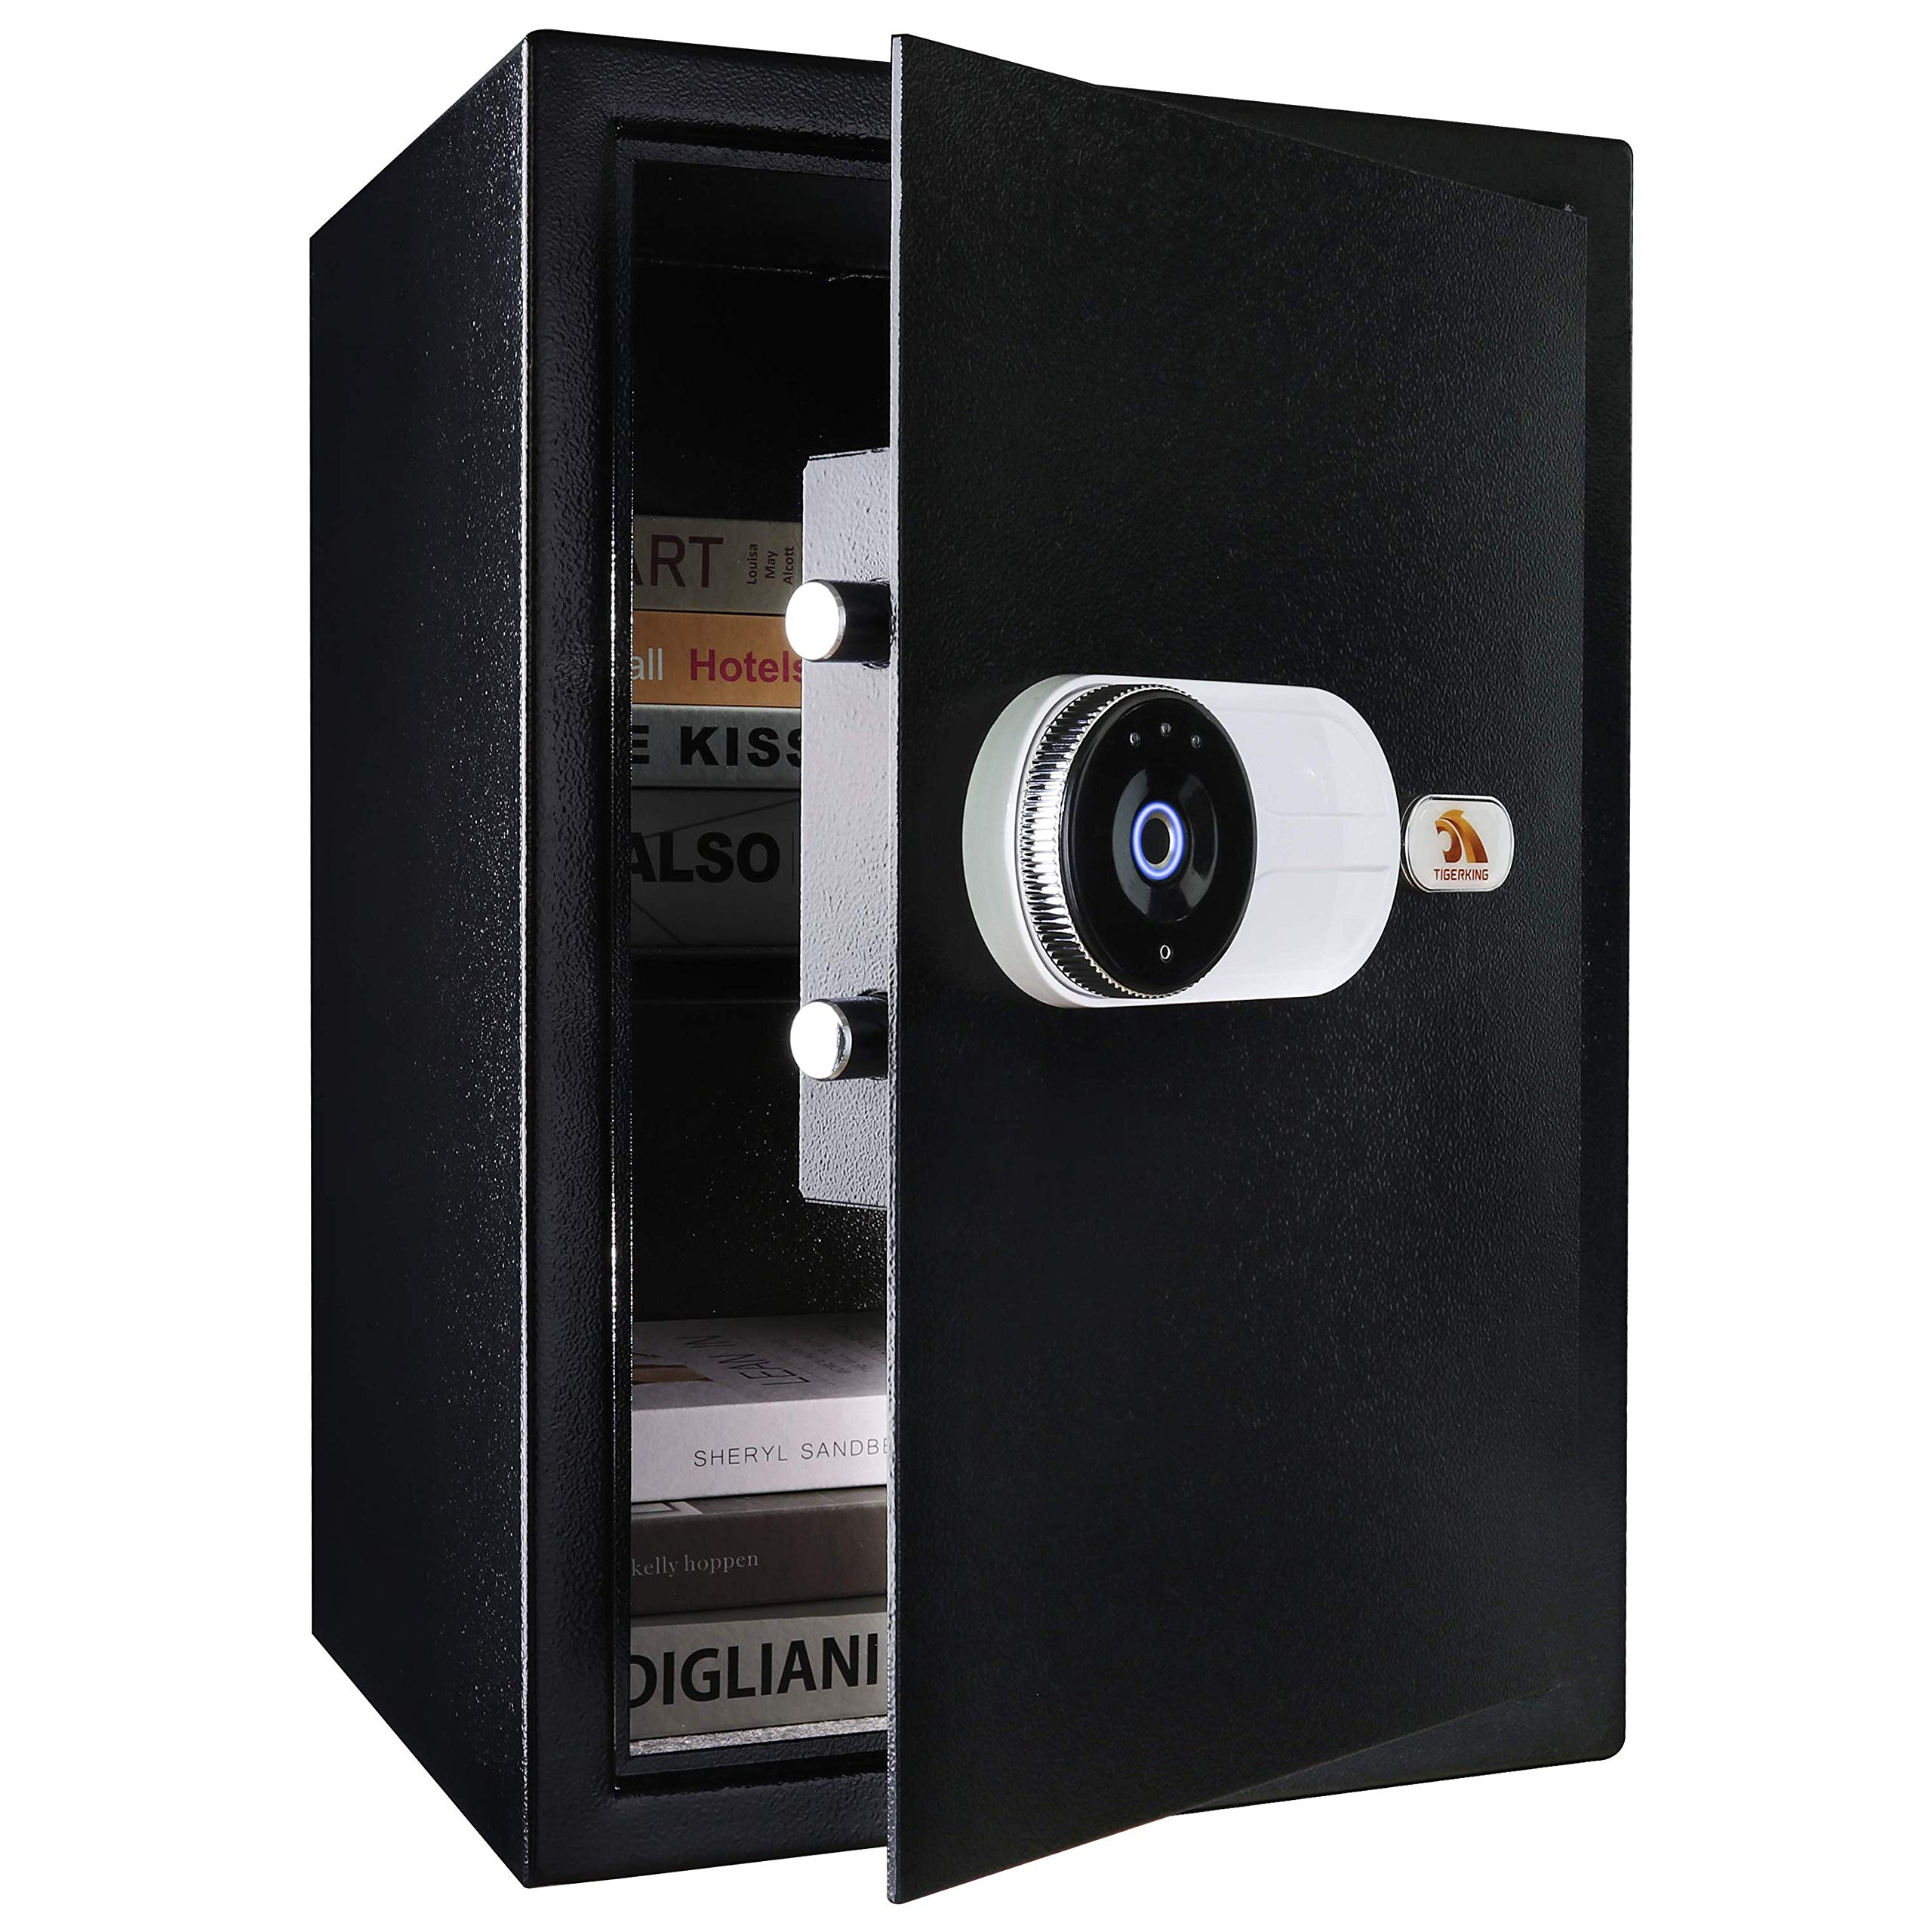 TIGERKING Large Biometric Safe Fingerprint Safe Security Safe Box Black - E50PF TIGERKING SAFE